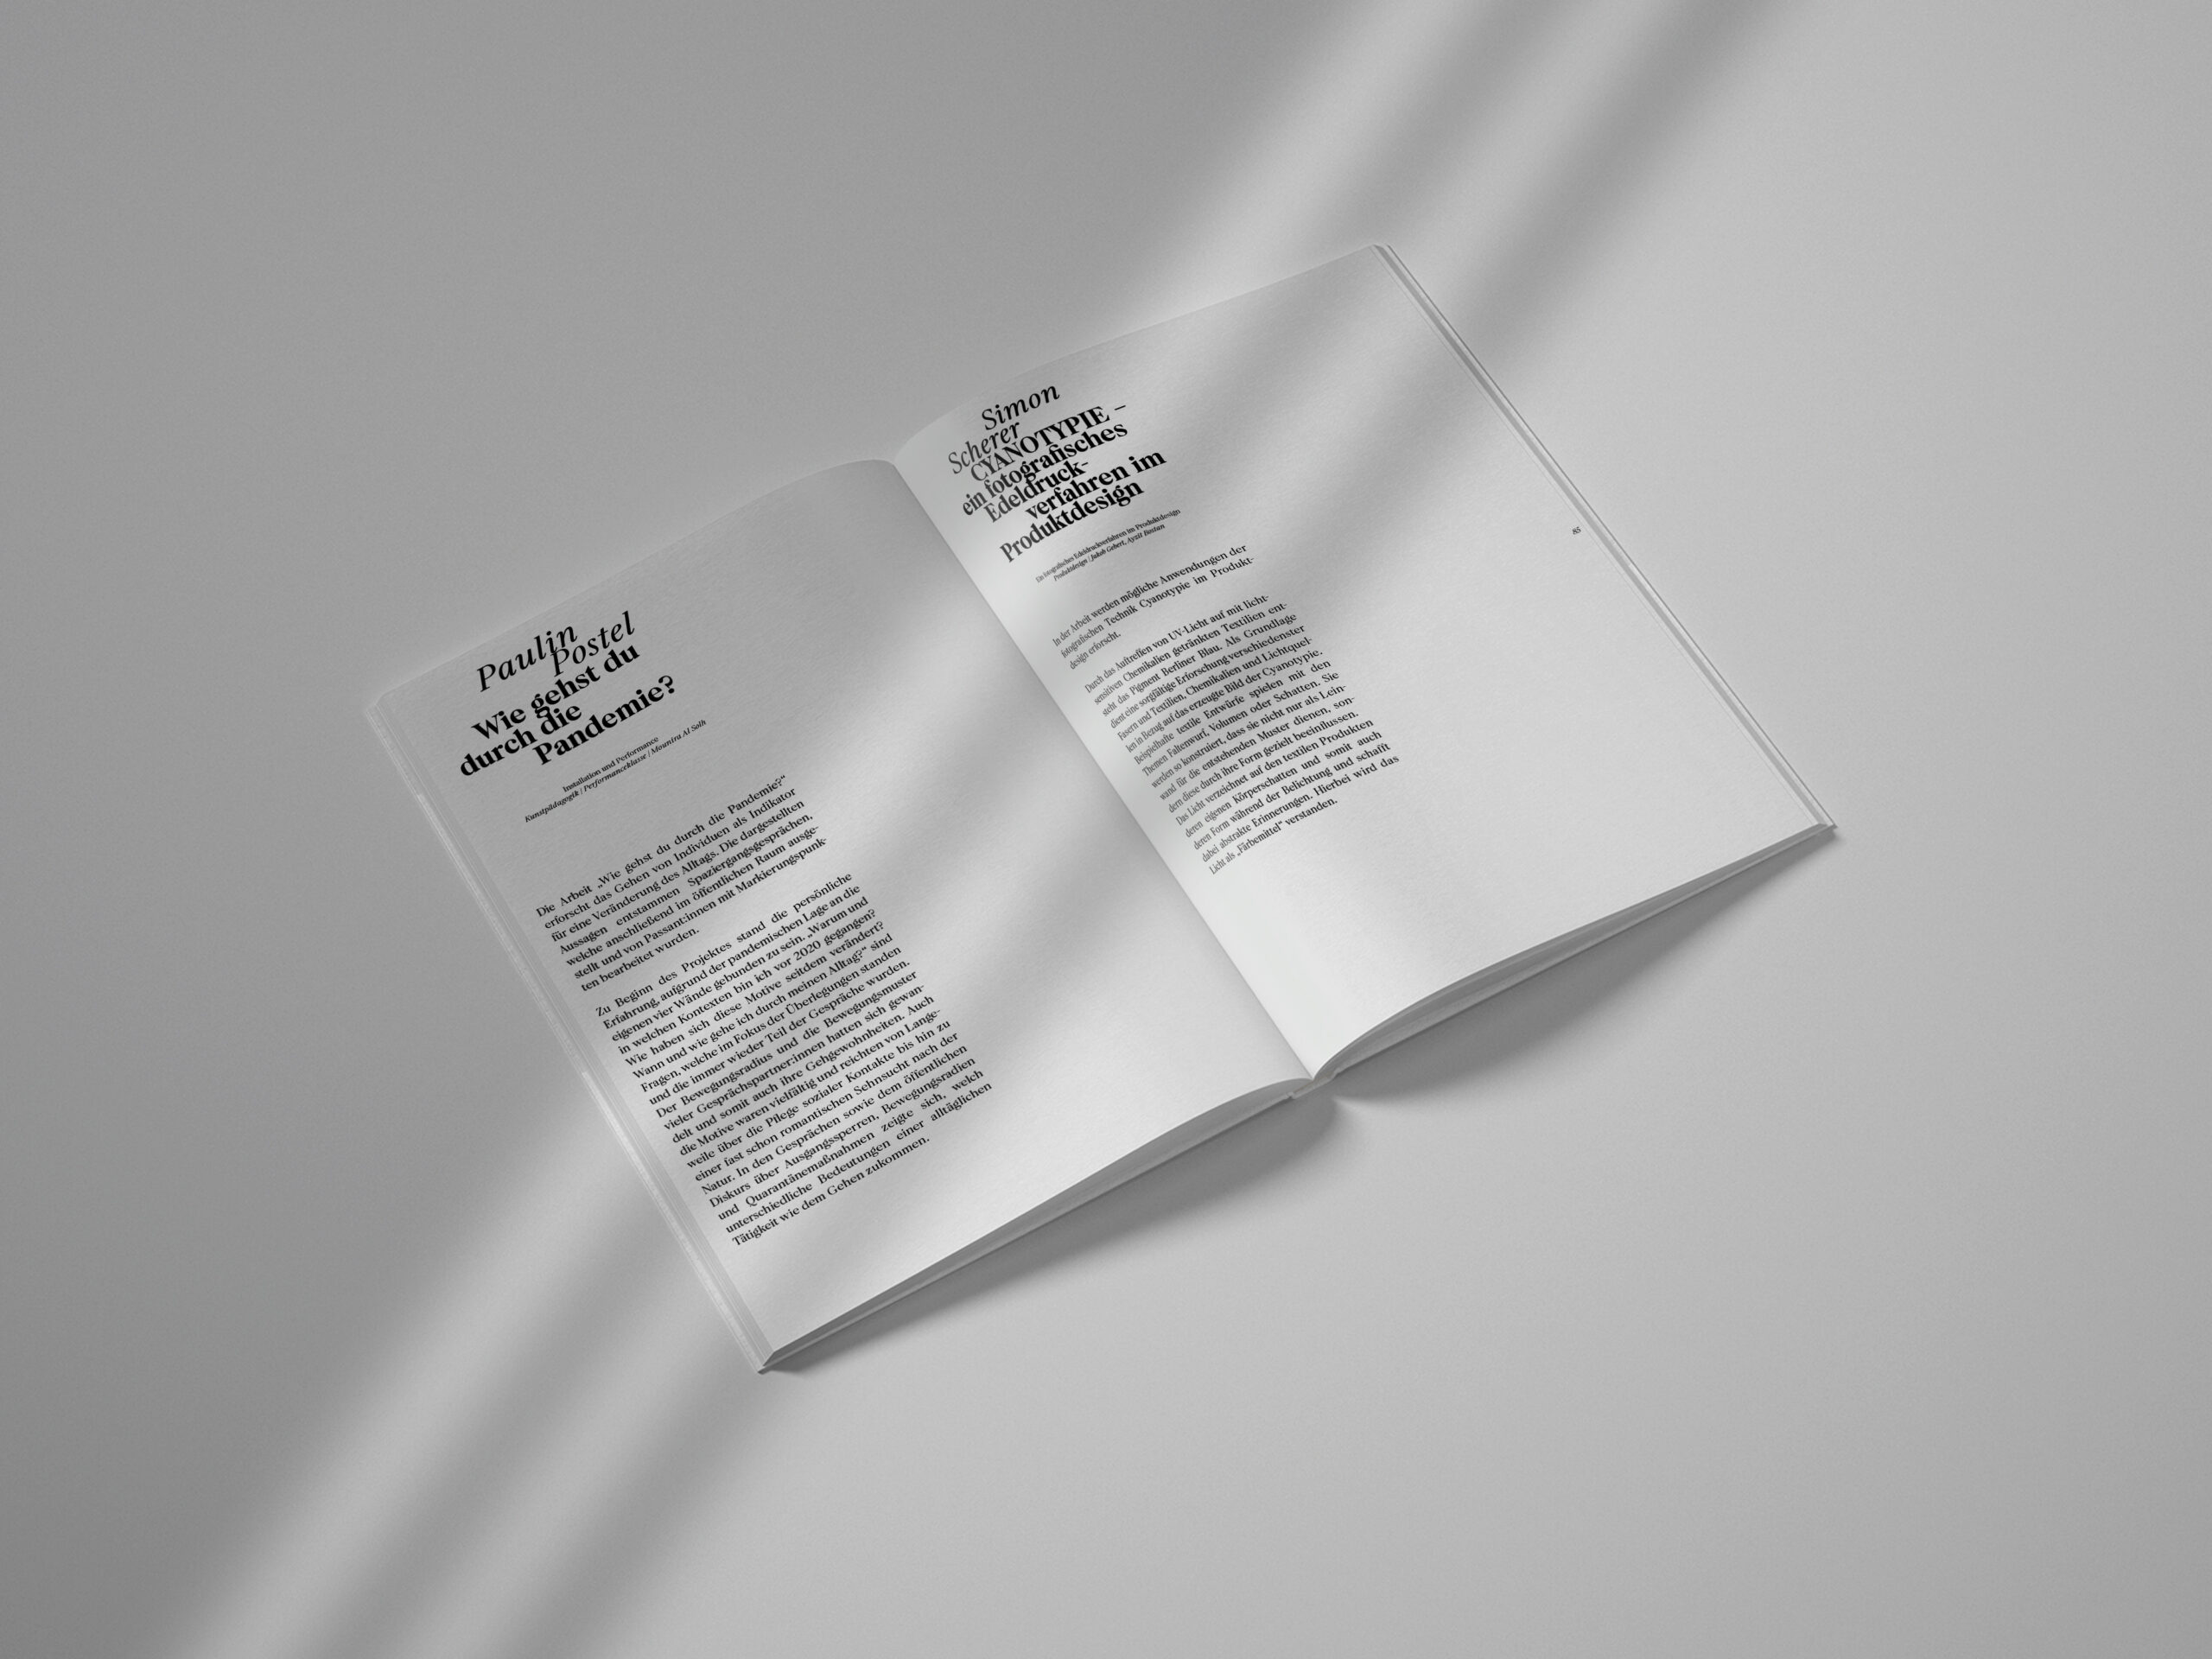 examen-exhibitiondesign-management-servicedesign-kunstkaltalog-publikation-12